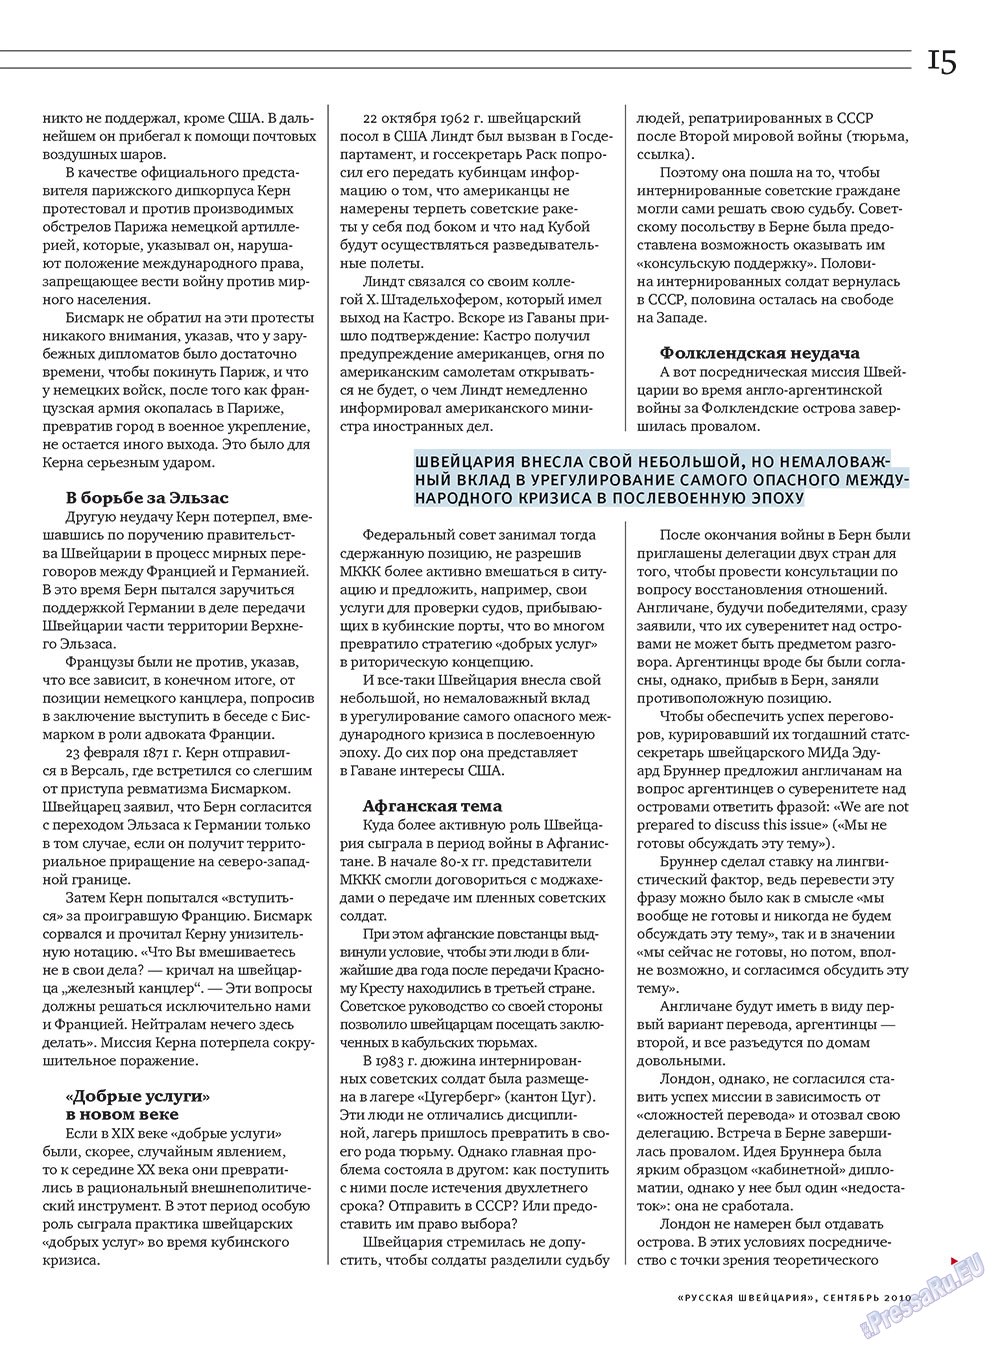 Russkaja Schweizaria (Zeitschrift). 2010 Jahr, Ausgabe 7, Seite 15